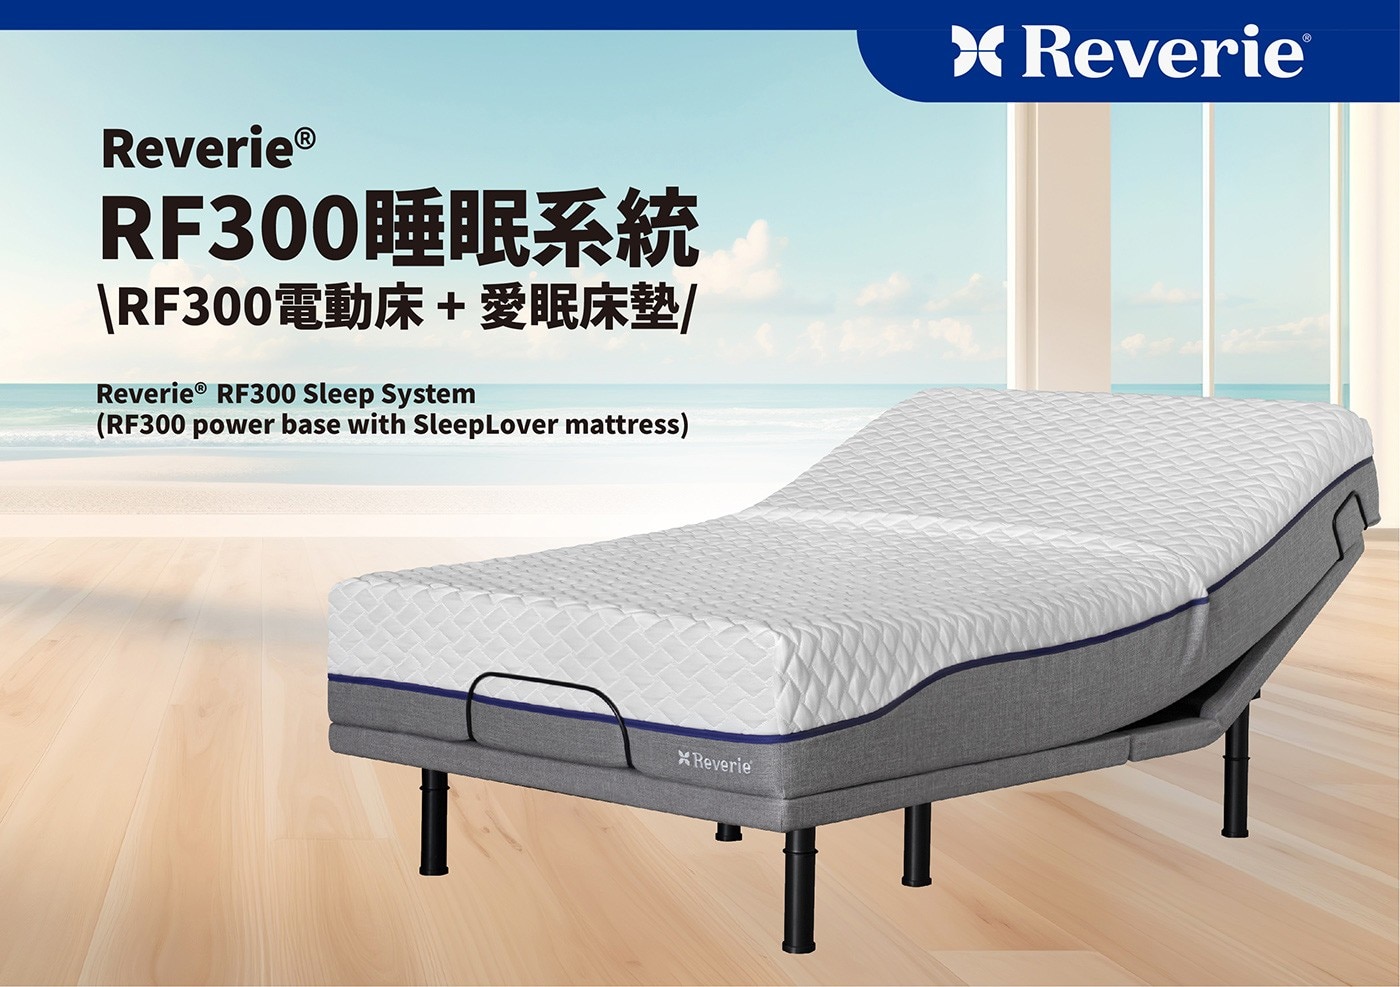 幻知曲 RF300 標準單人睡眠系統RF300電動床+愛眠床墊，3D親膚交錯菱格紋面布，柔軟透氣具舒適性。輕鬆按一鍵遙控器，不管是閱讀、看電視、抬腿紓壓或在床上使用筆電，都可以找到舒適的位置。